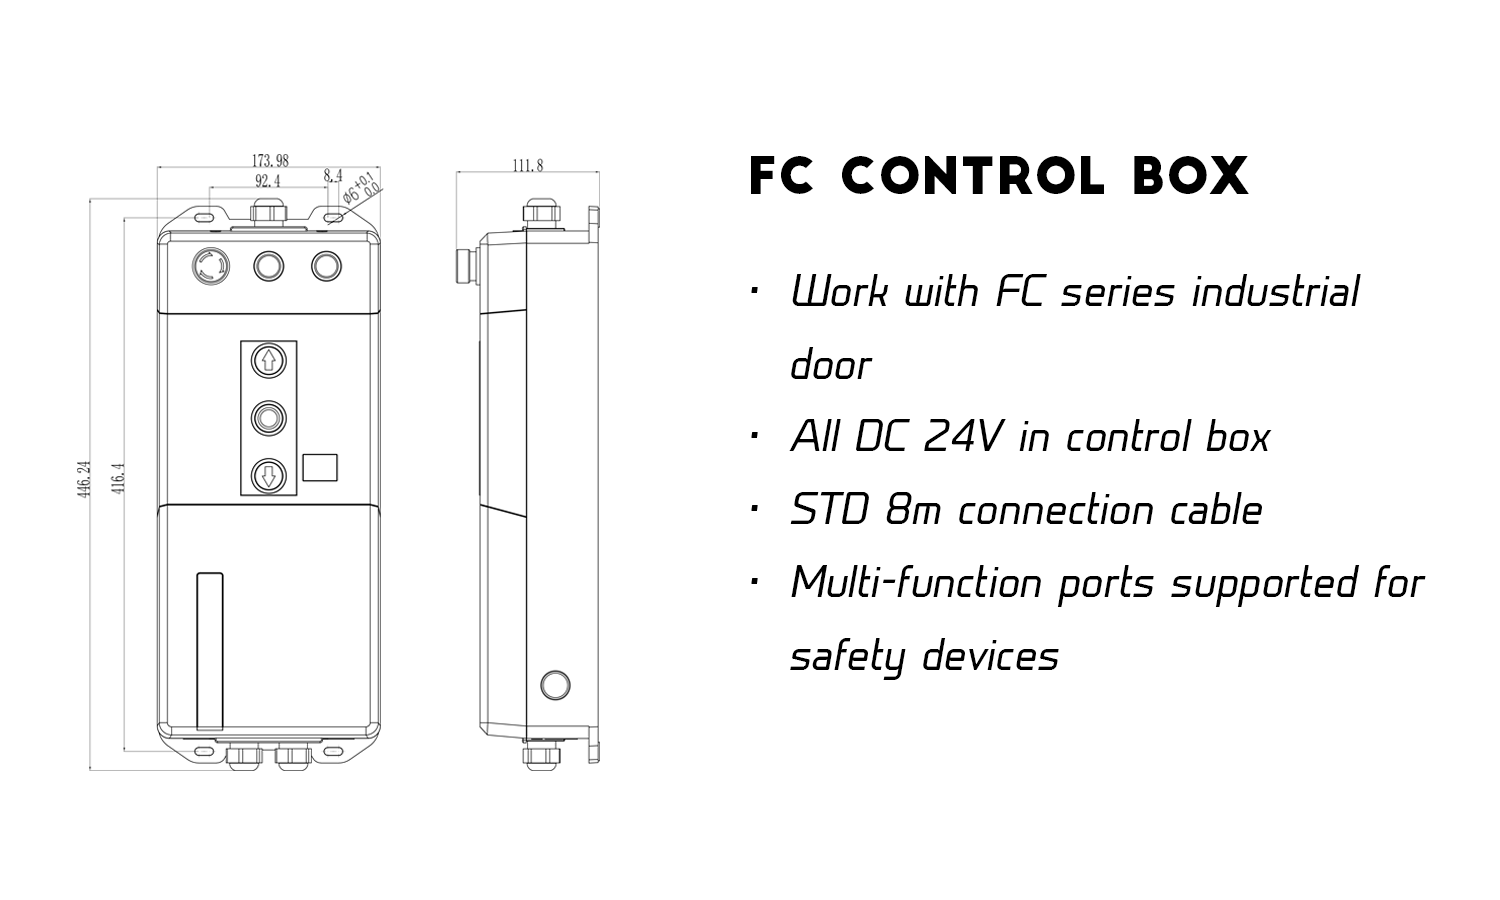 FC CONTROL BOX